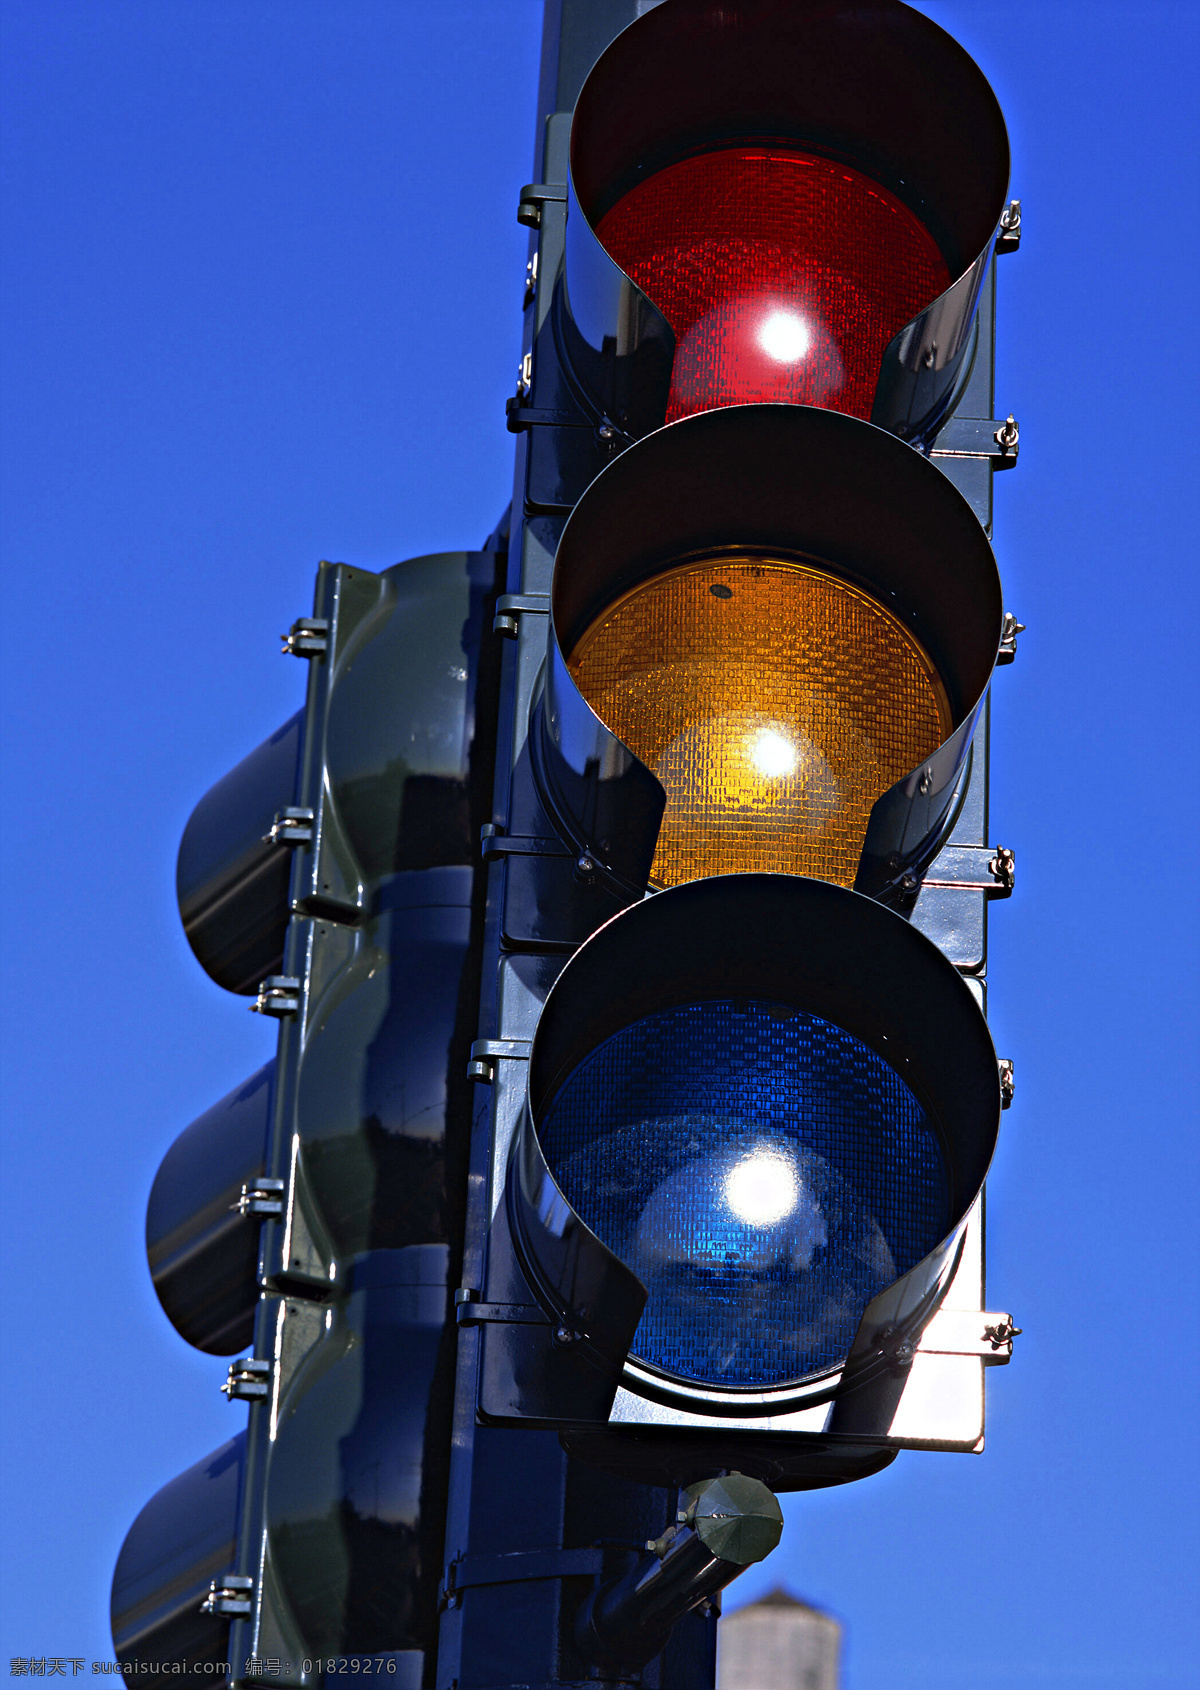 铁路信号灯 交通指示灯 指示灯 红绿灯 火车和指示灯 铁道指示灯 信号灯 红绿灯特写 信号灯特写 生活百科 生活素材 摄影图库